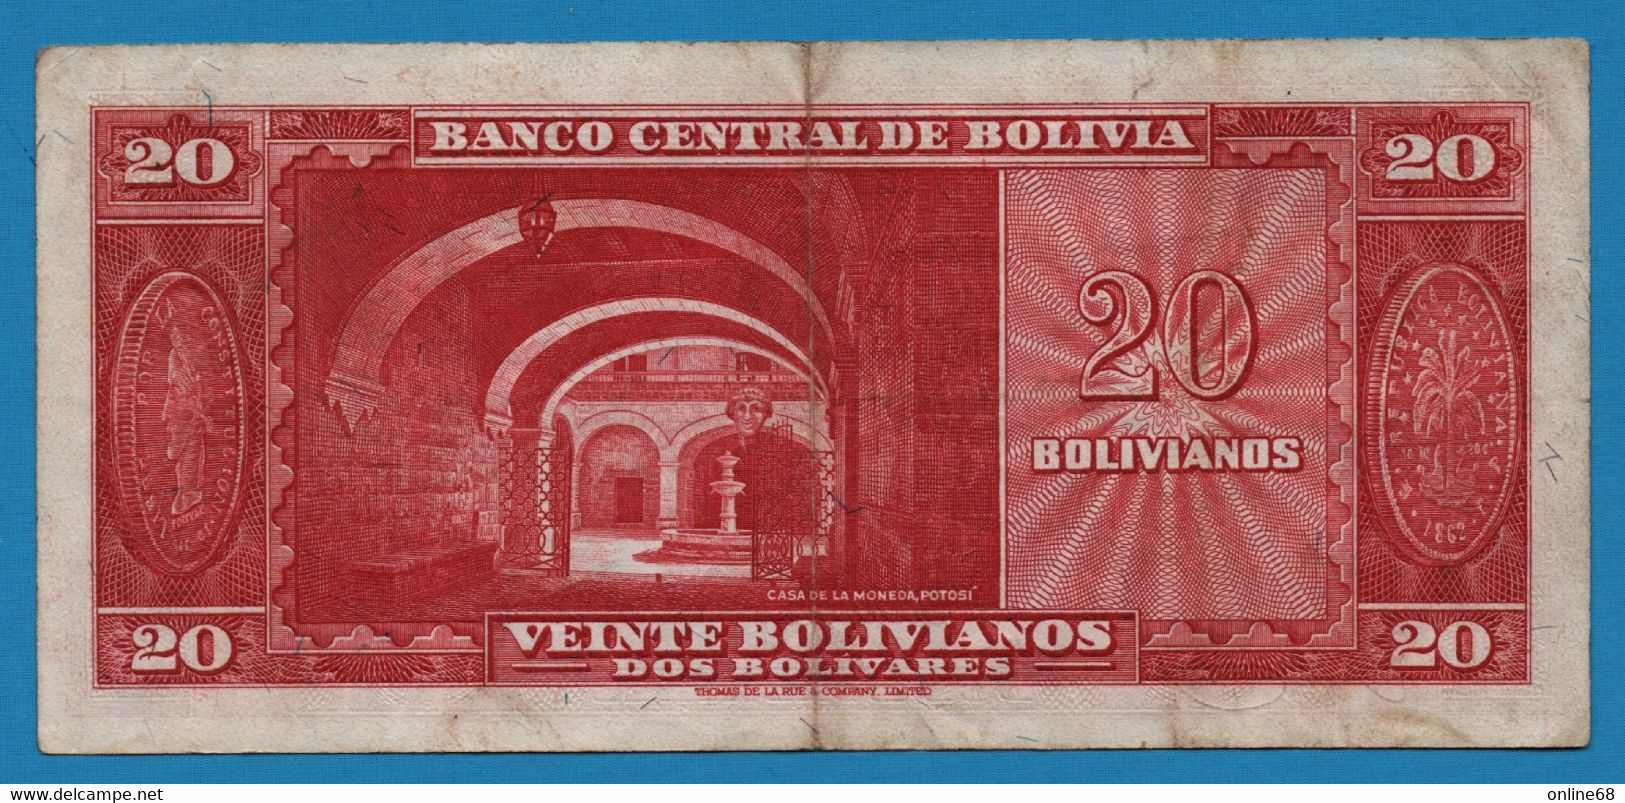 BOLIVIA 20 Bolivianos  L. 20.12.1945  # P 258611  P# 140   Simón Bolívar - Bolivie